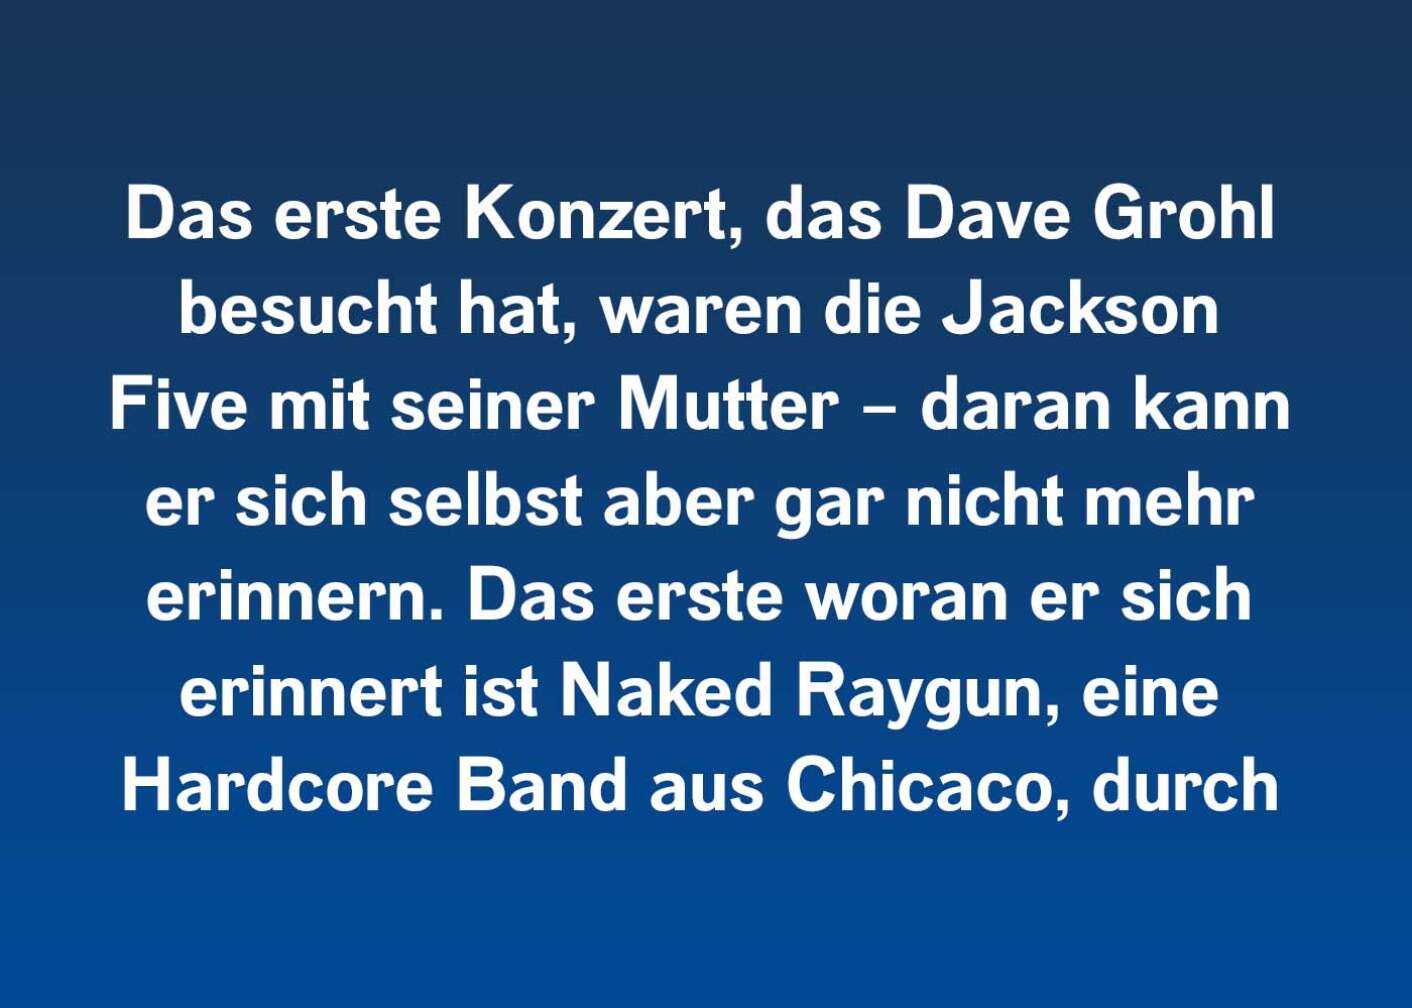 Das erste Konzert, das Dave Grohl besucht hat, waren die Jackson Five mit seiner Mutter – daran kann er sich selbst aber gar nicht mehr erinnern. Das erste woran er sich erinnert ist Naked Raygun, eine Hardcore Band aus Chicaco, durch die er den Punkrock lieben lernte.